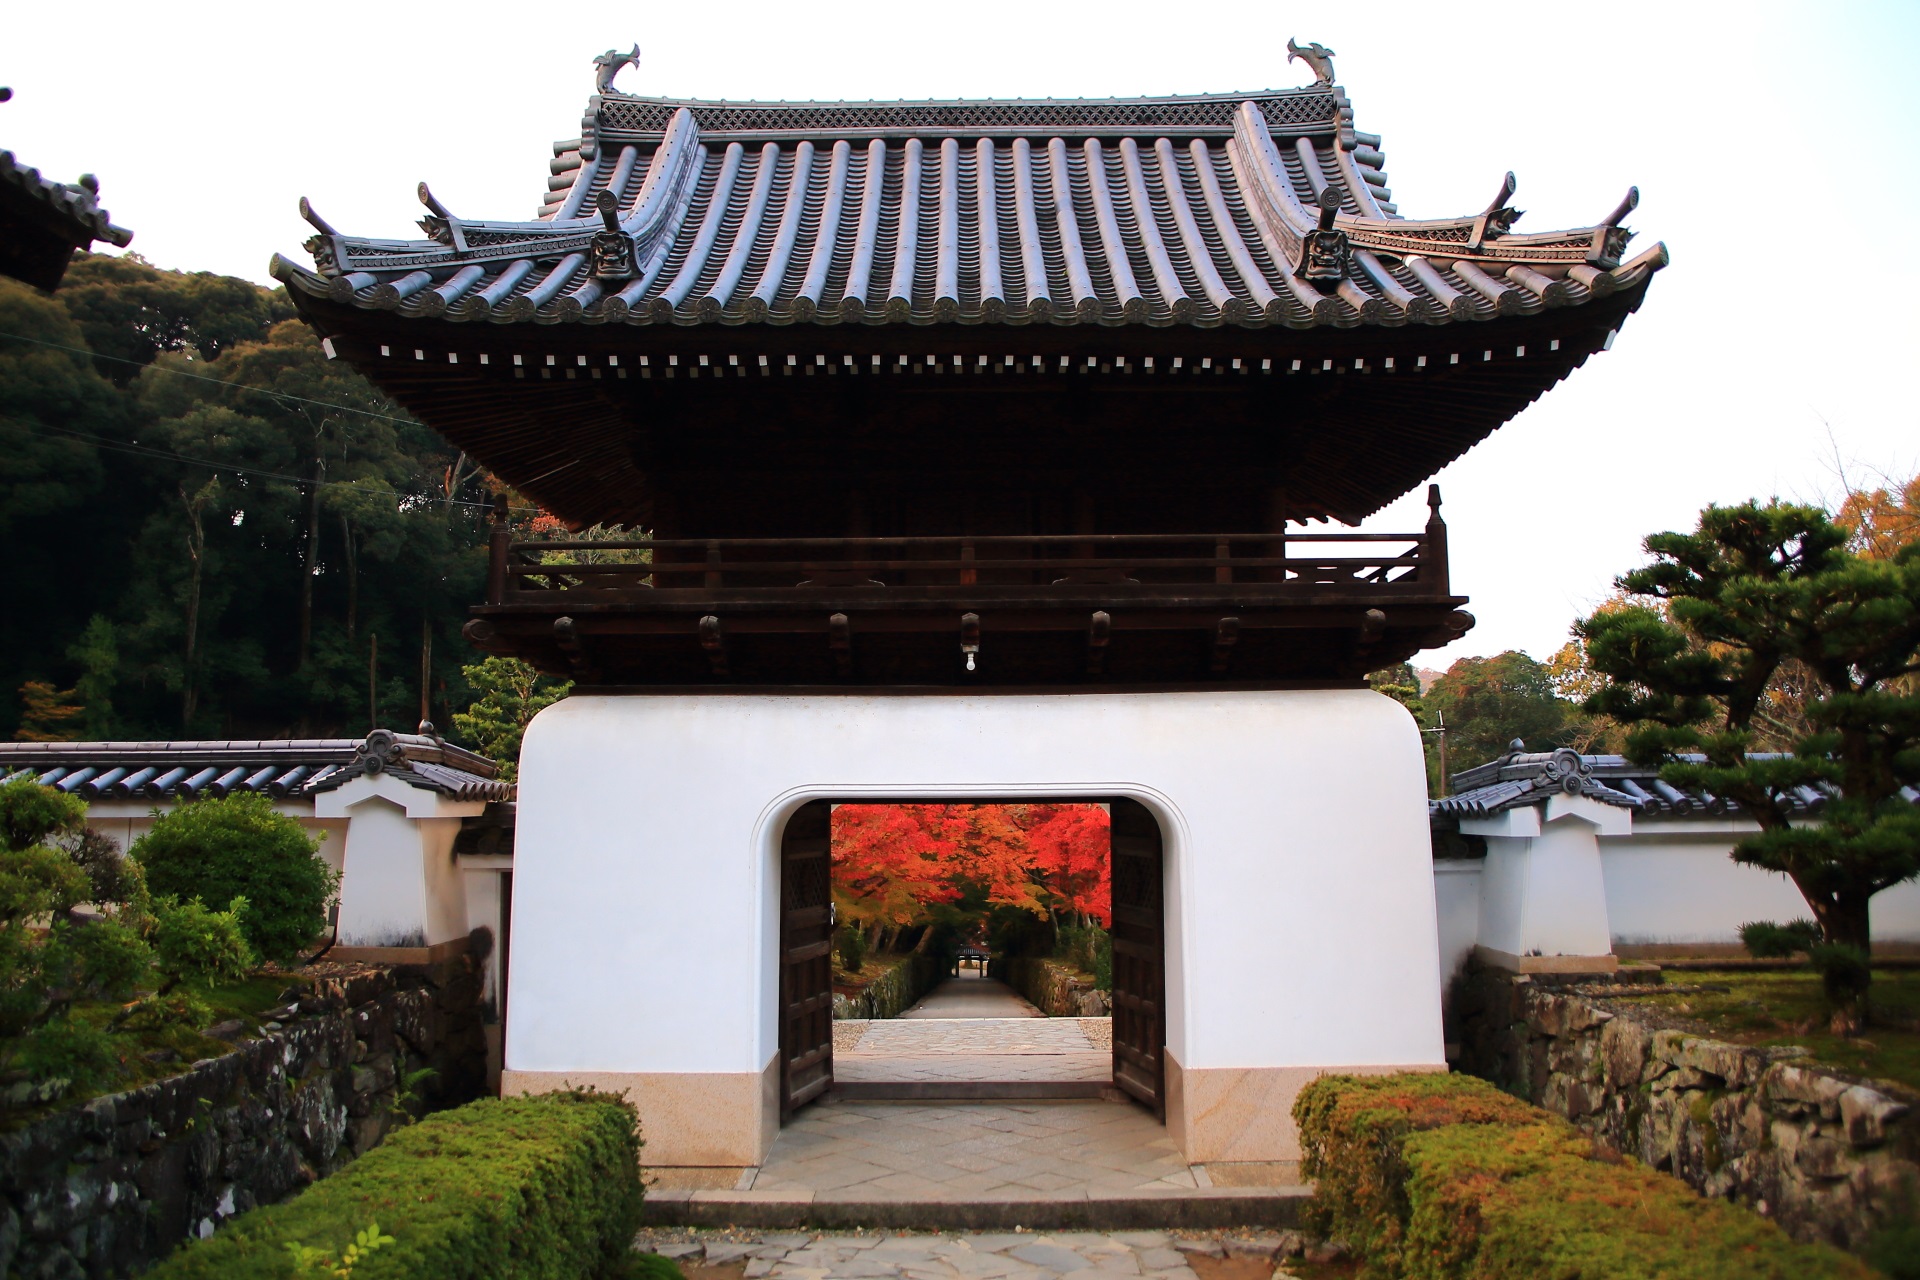 興聖寺の龍宮門とそこから続く長い琴坂を彩る紅葉